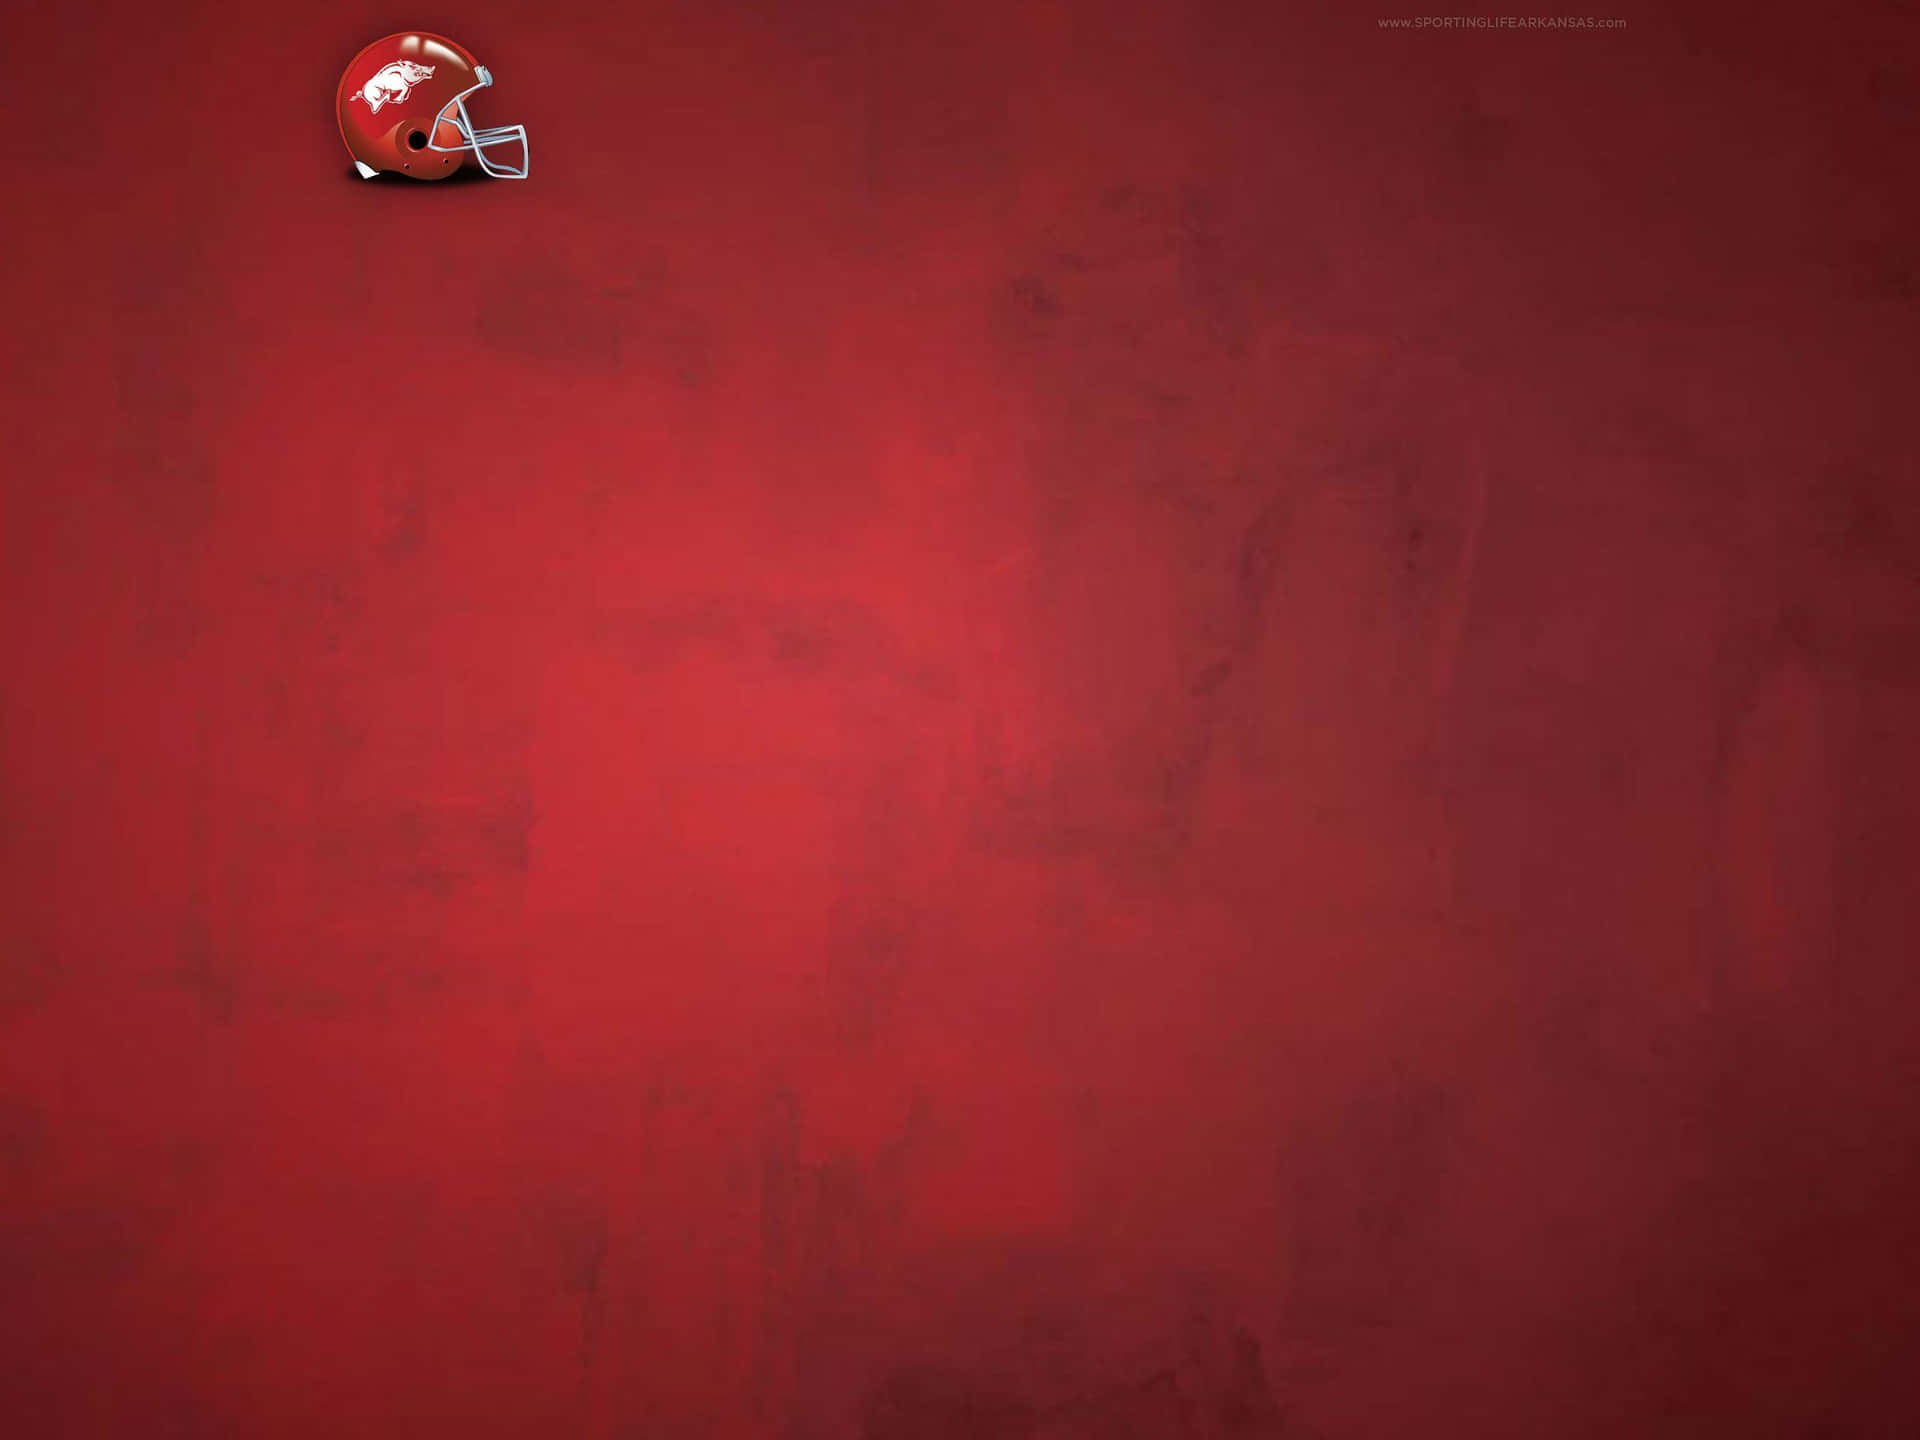 Einroter Hintergrund Mit Einem Football-helm Darauf. Wallpaper